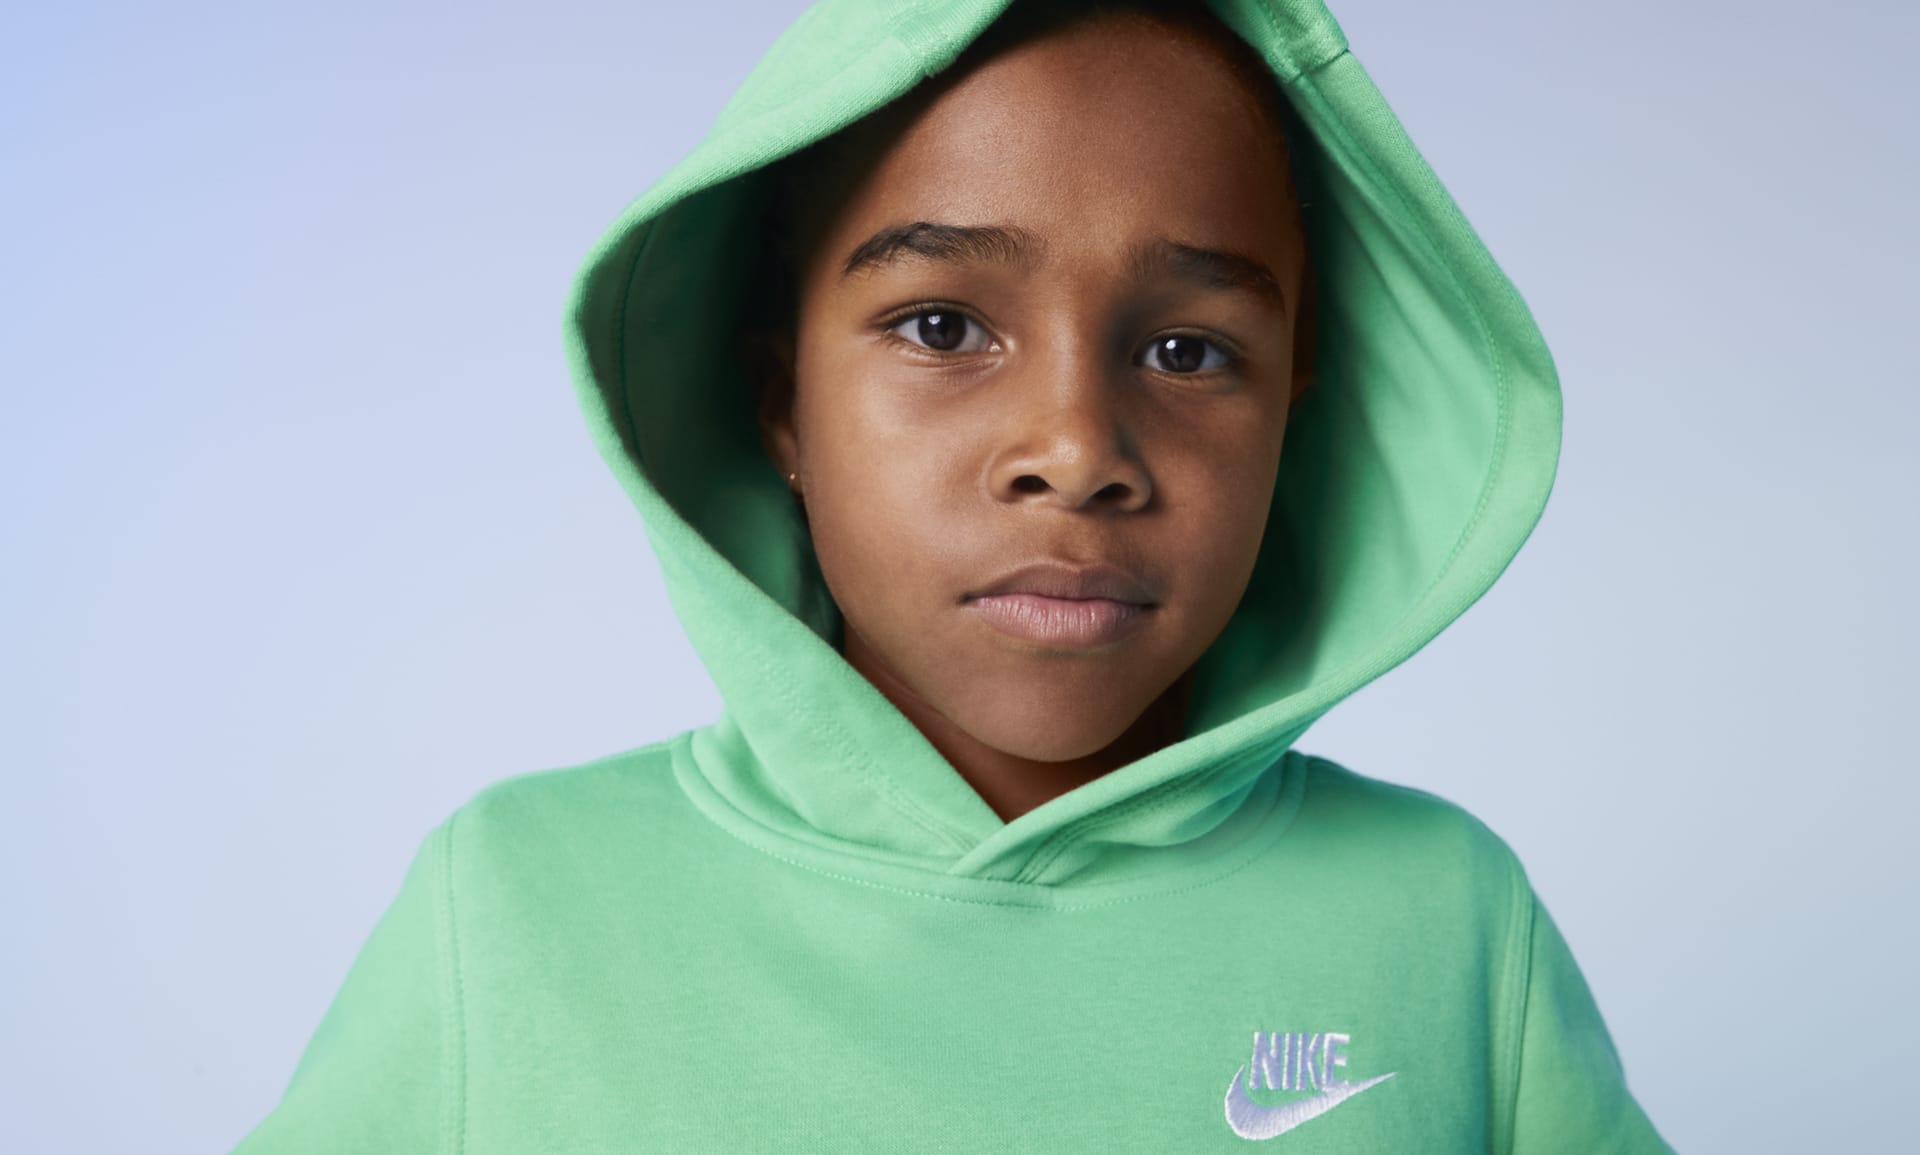 Sweat capuche Nike Sportswear Club Fleece pour Enfant - BV3757-011